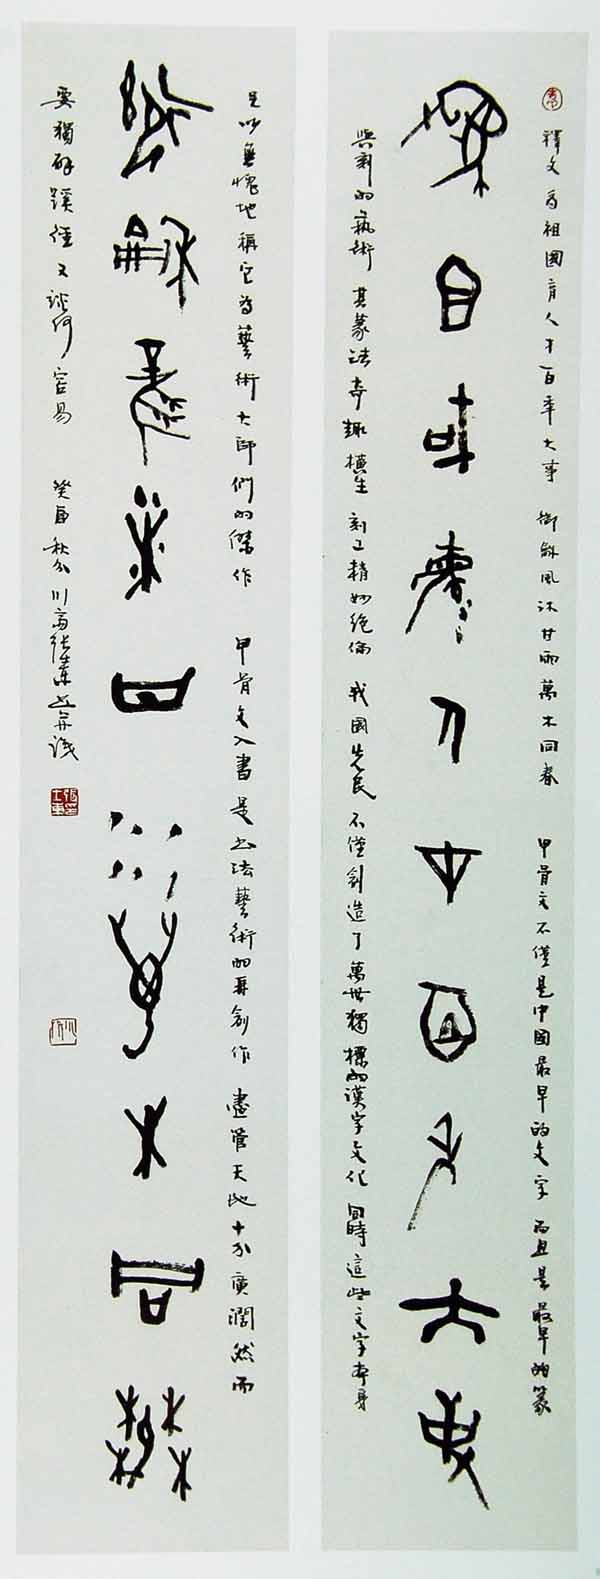 古文字体系——甲骨文对联